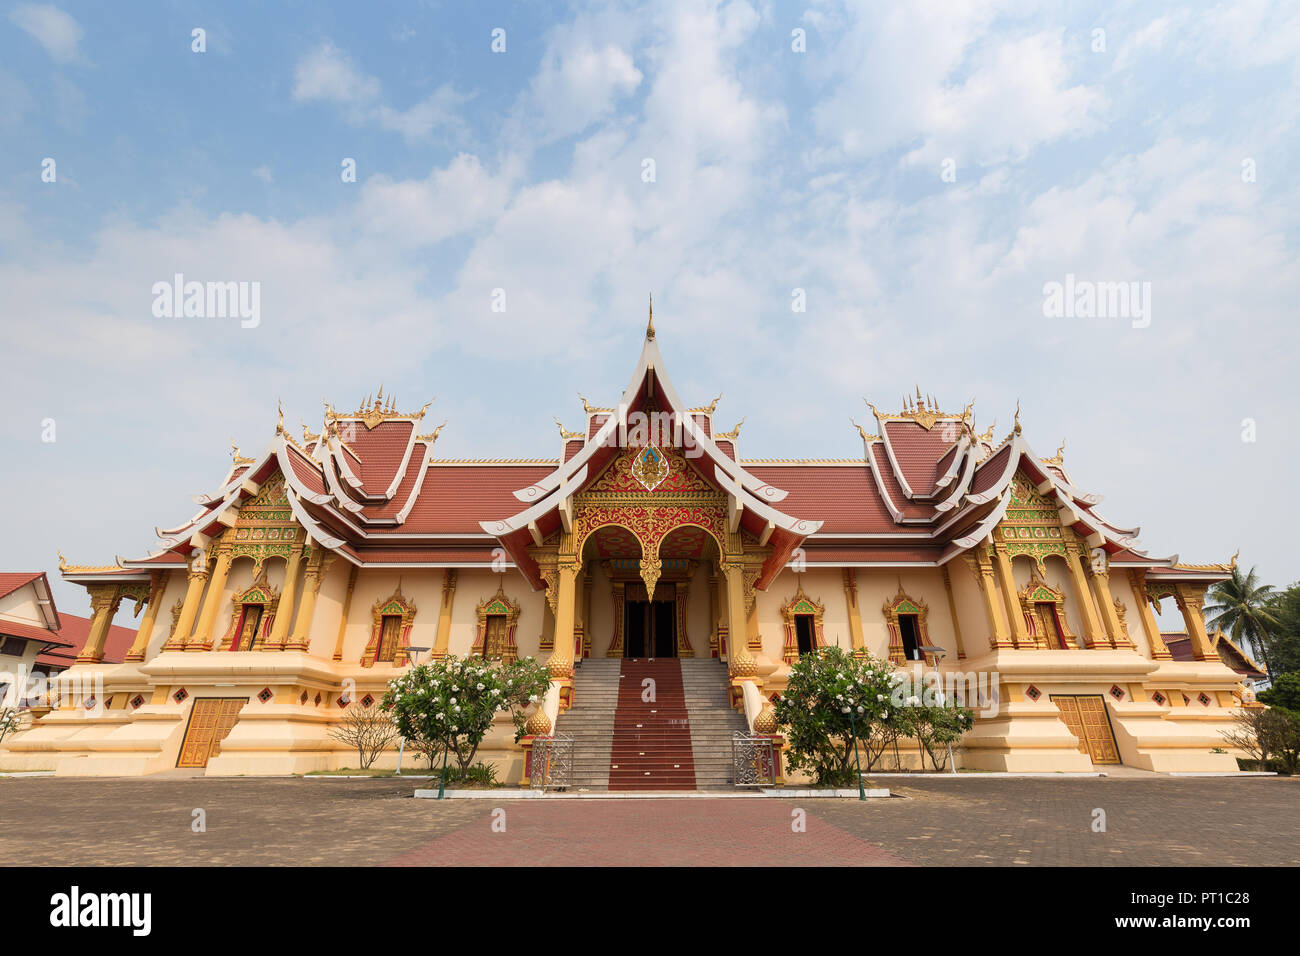 Hor buddista Dhammasabha convention hall di Wat That Luang Neau tempio di Vientiane, Laos, in una giornata di sole. Copia dello spazio. Foto Stock